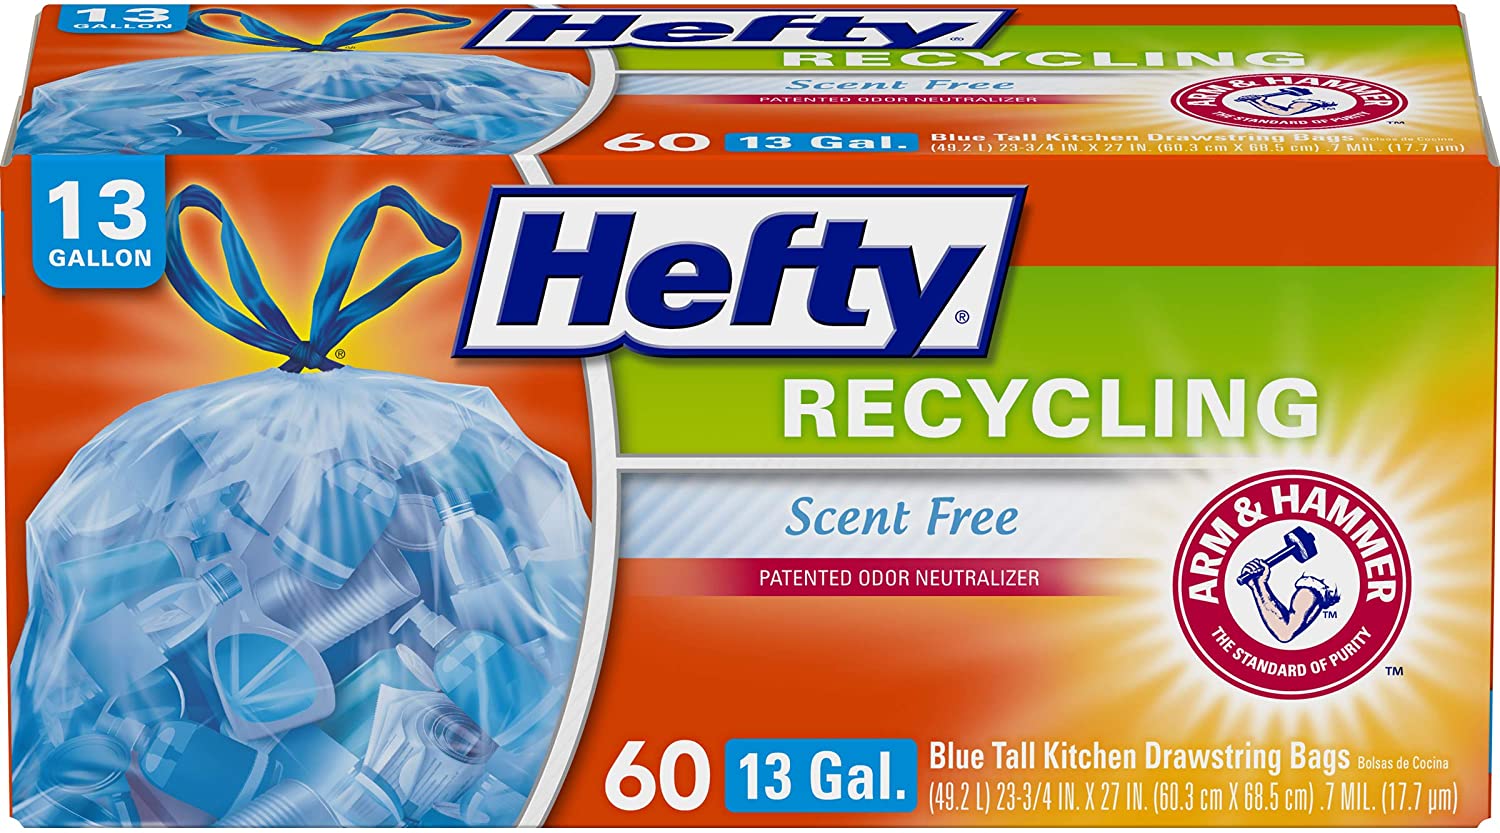 Hefty Recycling Blue Tall Kitchen Drawstring Trash Bags - 13 Gallon - 60ct